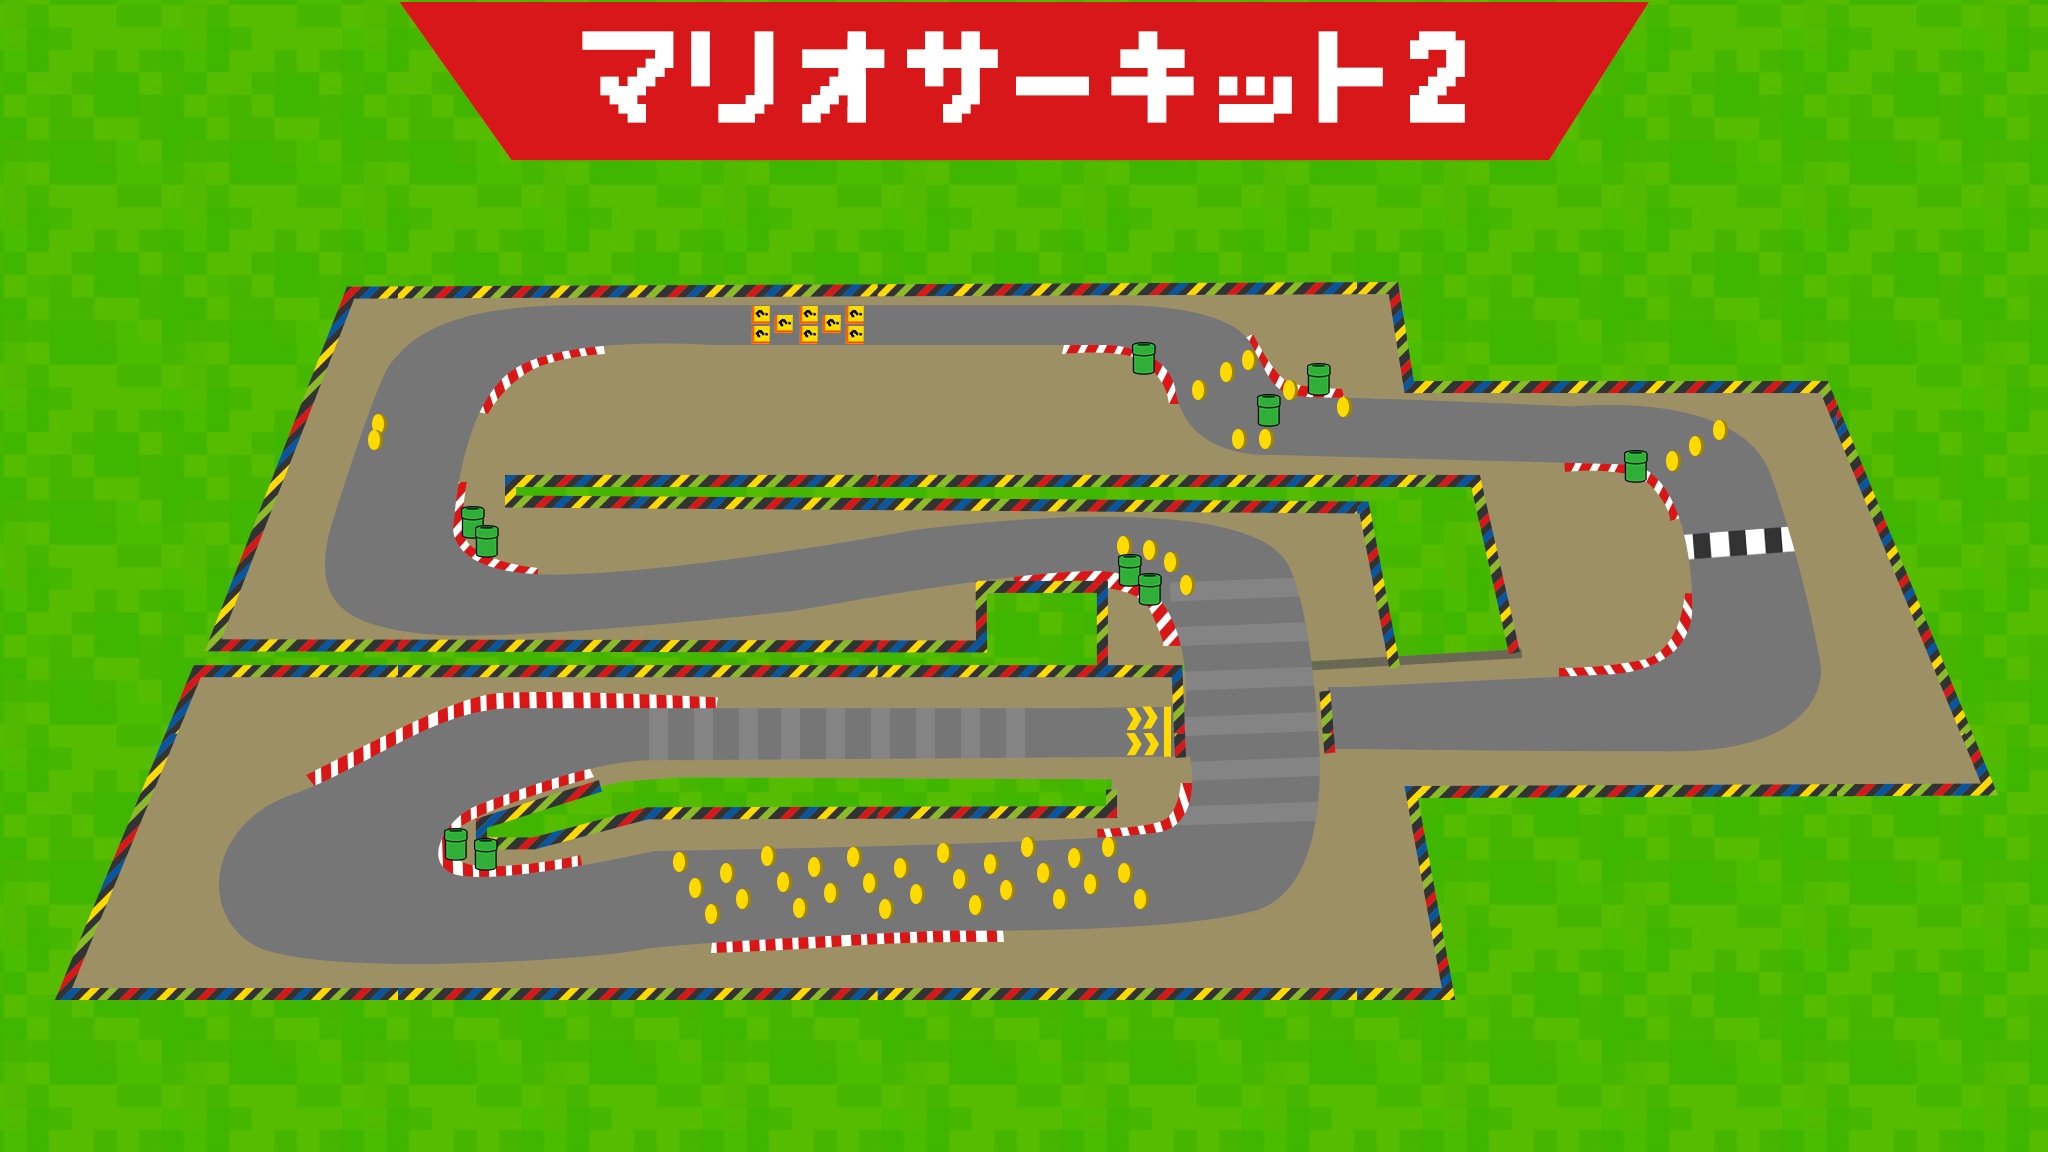 マリオサーキット2(Mario Circuit 2)の攻略方法